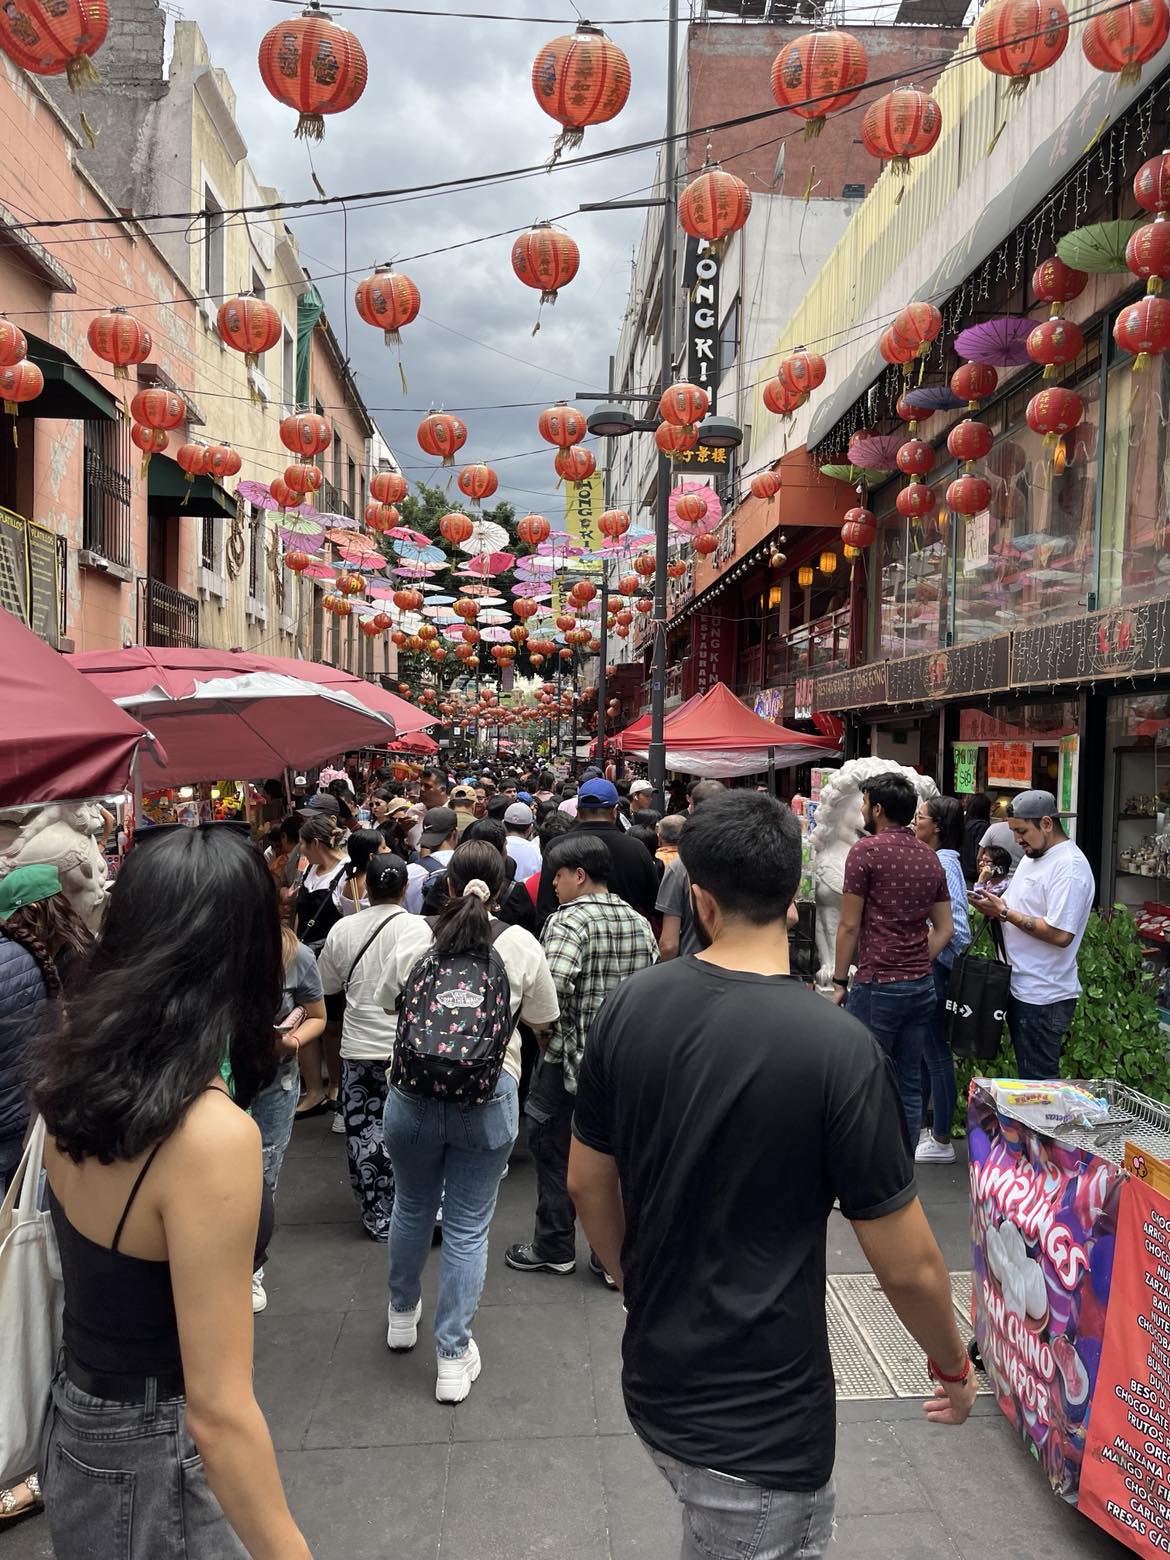 Une foule dans le quartier chinois de la Mexico City -astuces pour préparer son voyage